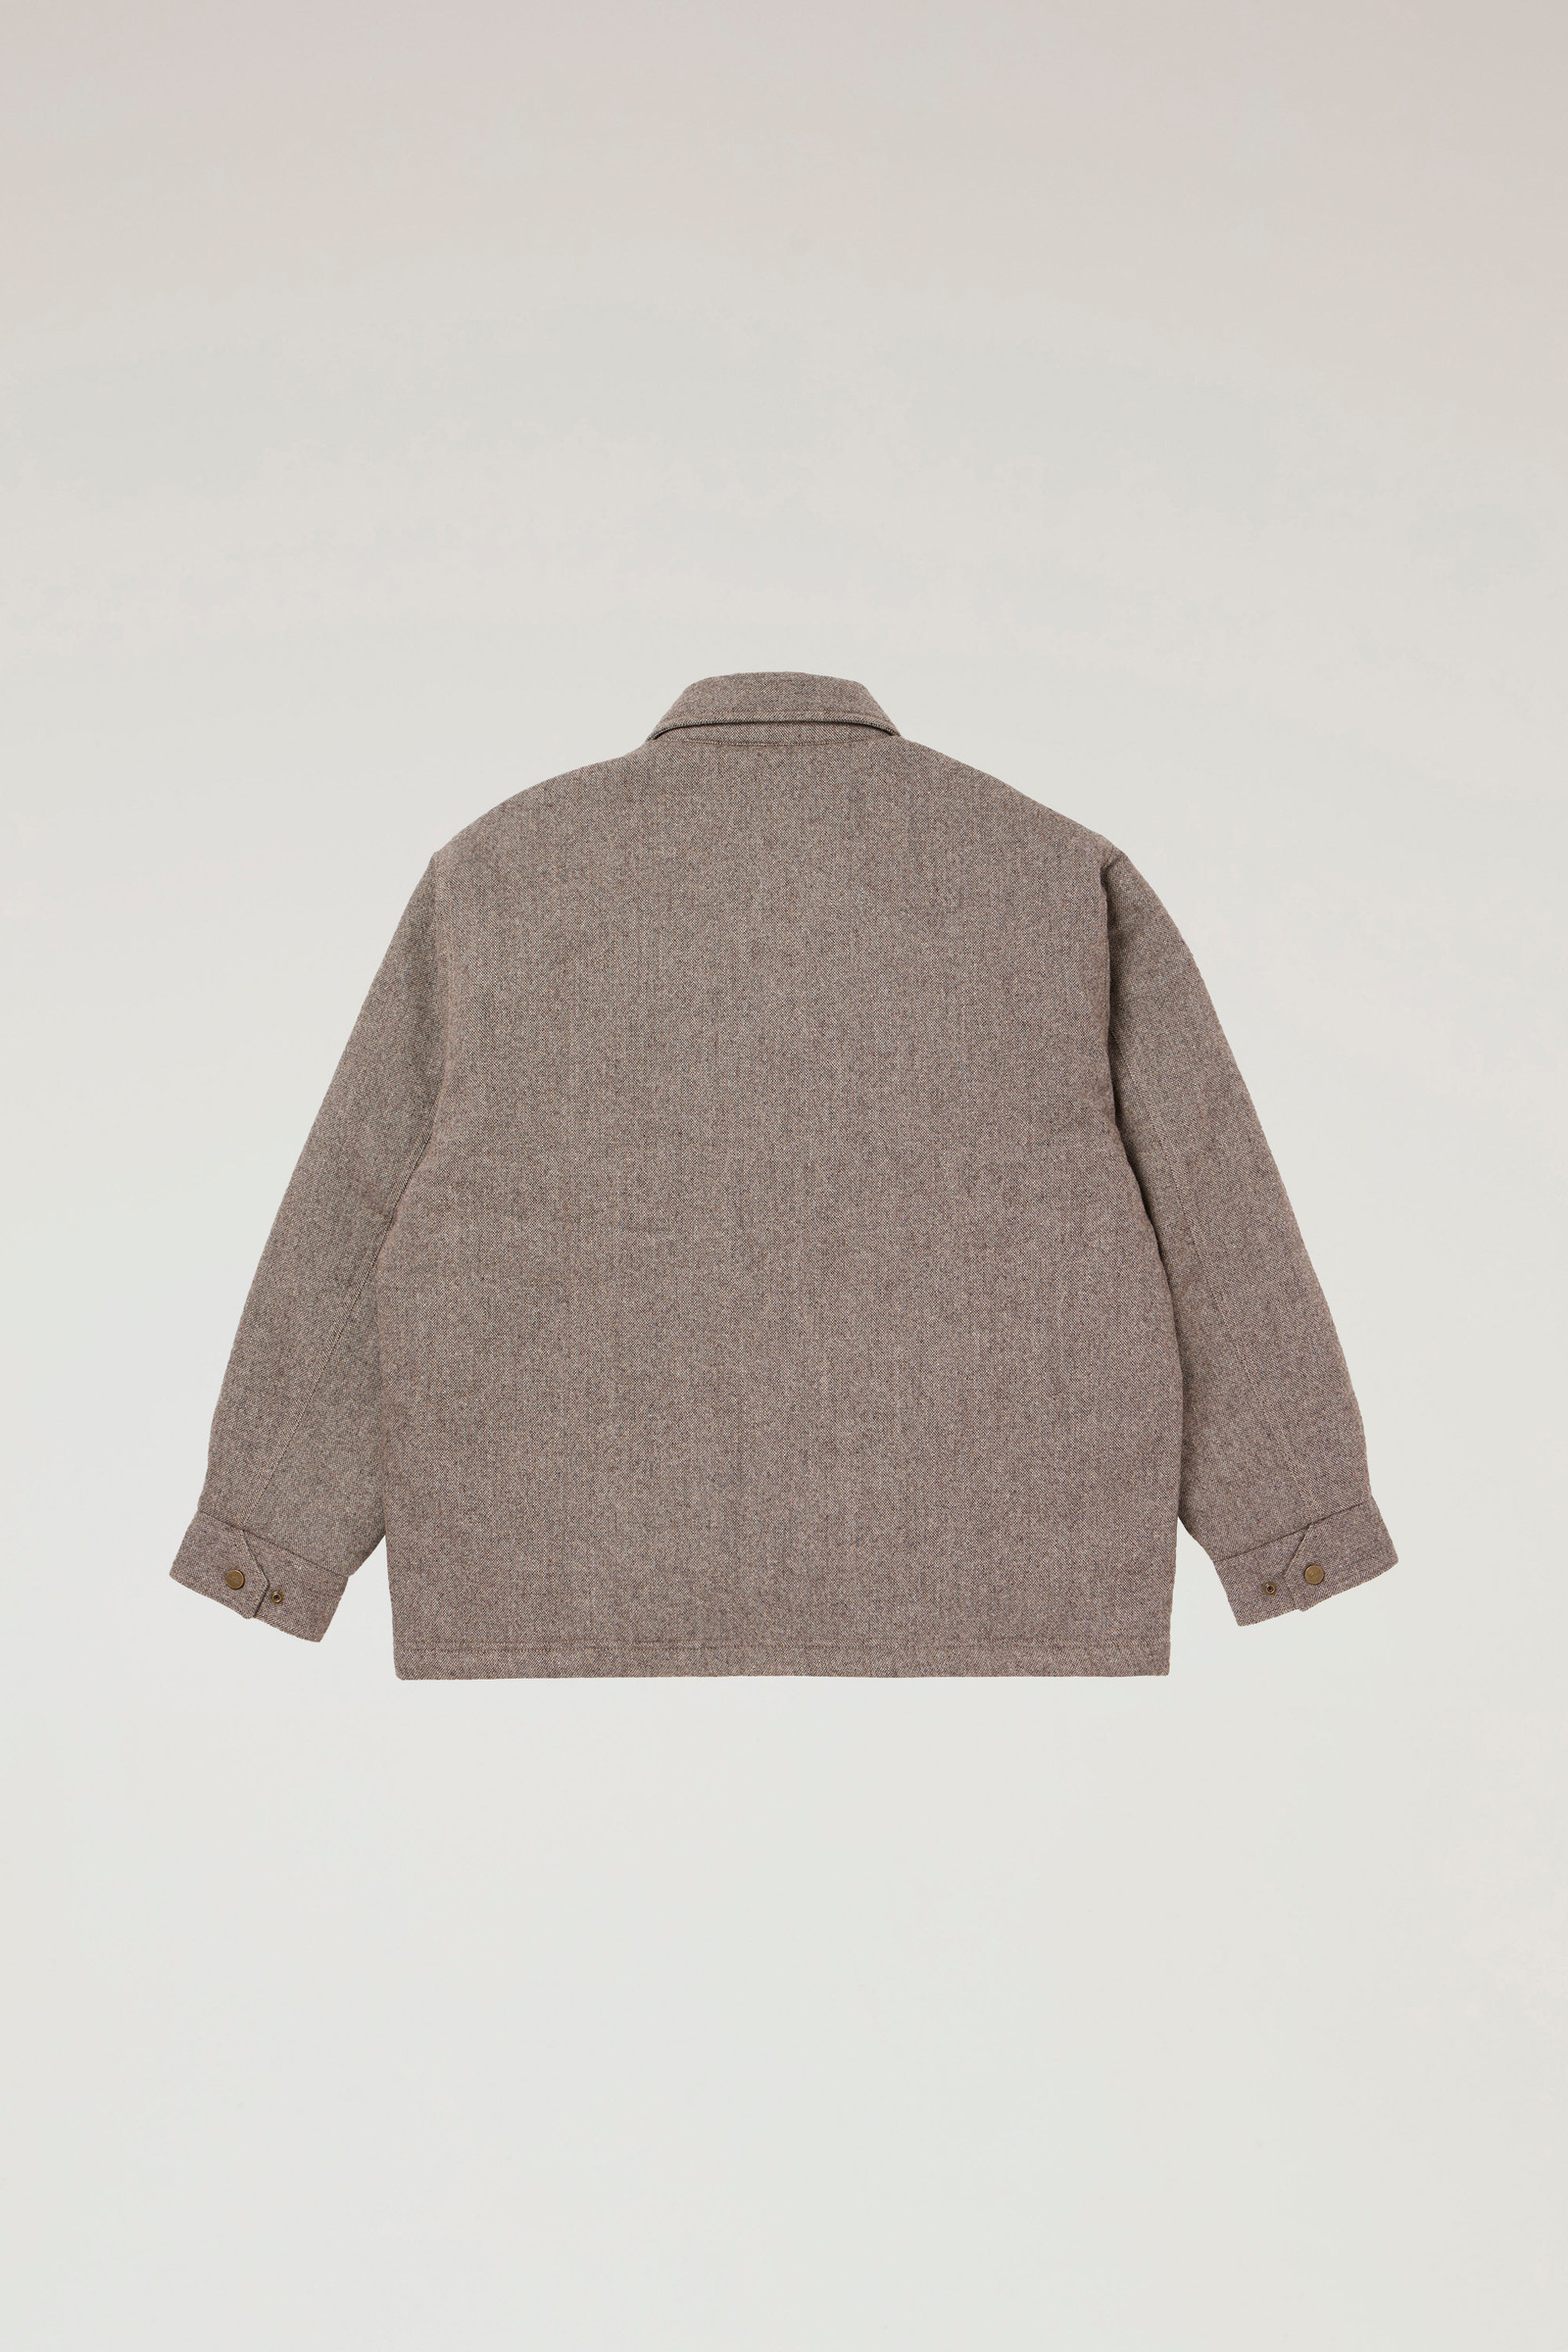 Men's Zip Jacket in Recycled Wool Tweed Beige | Woolrich USA